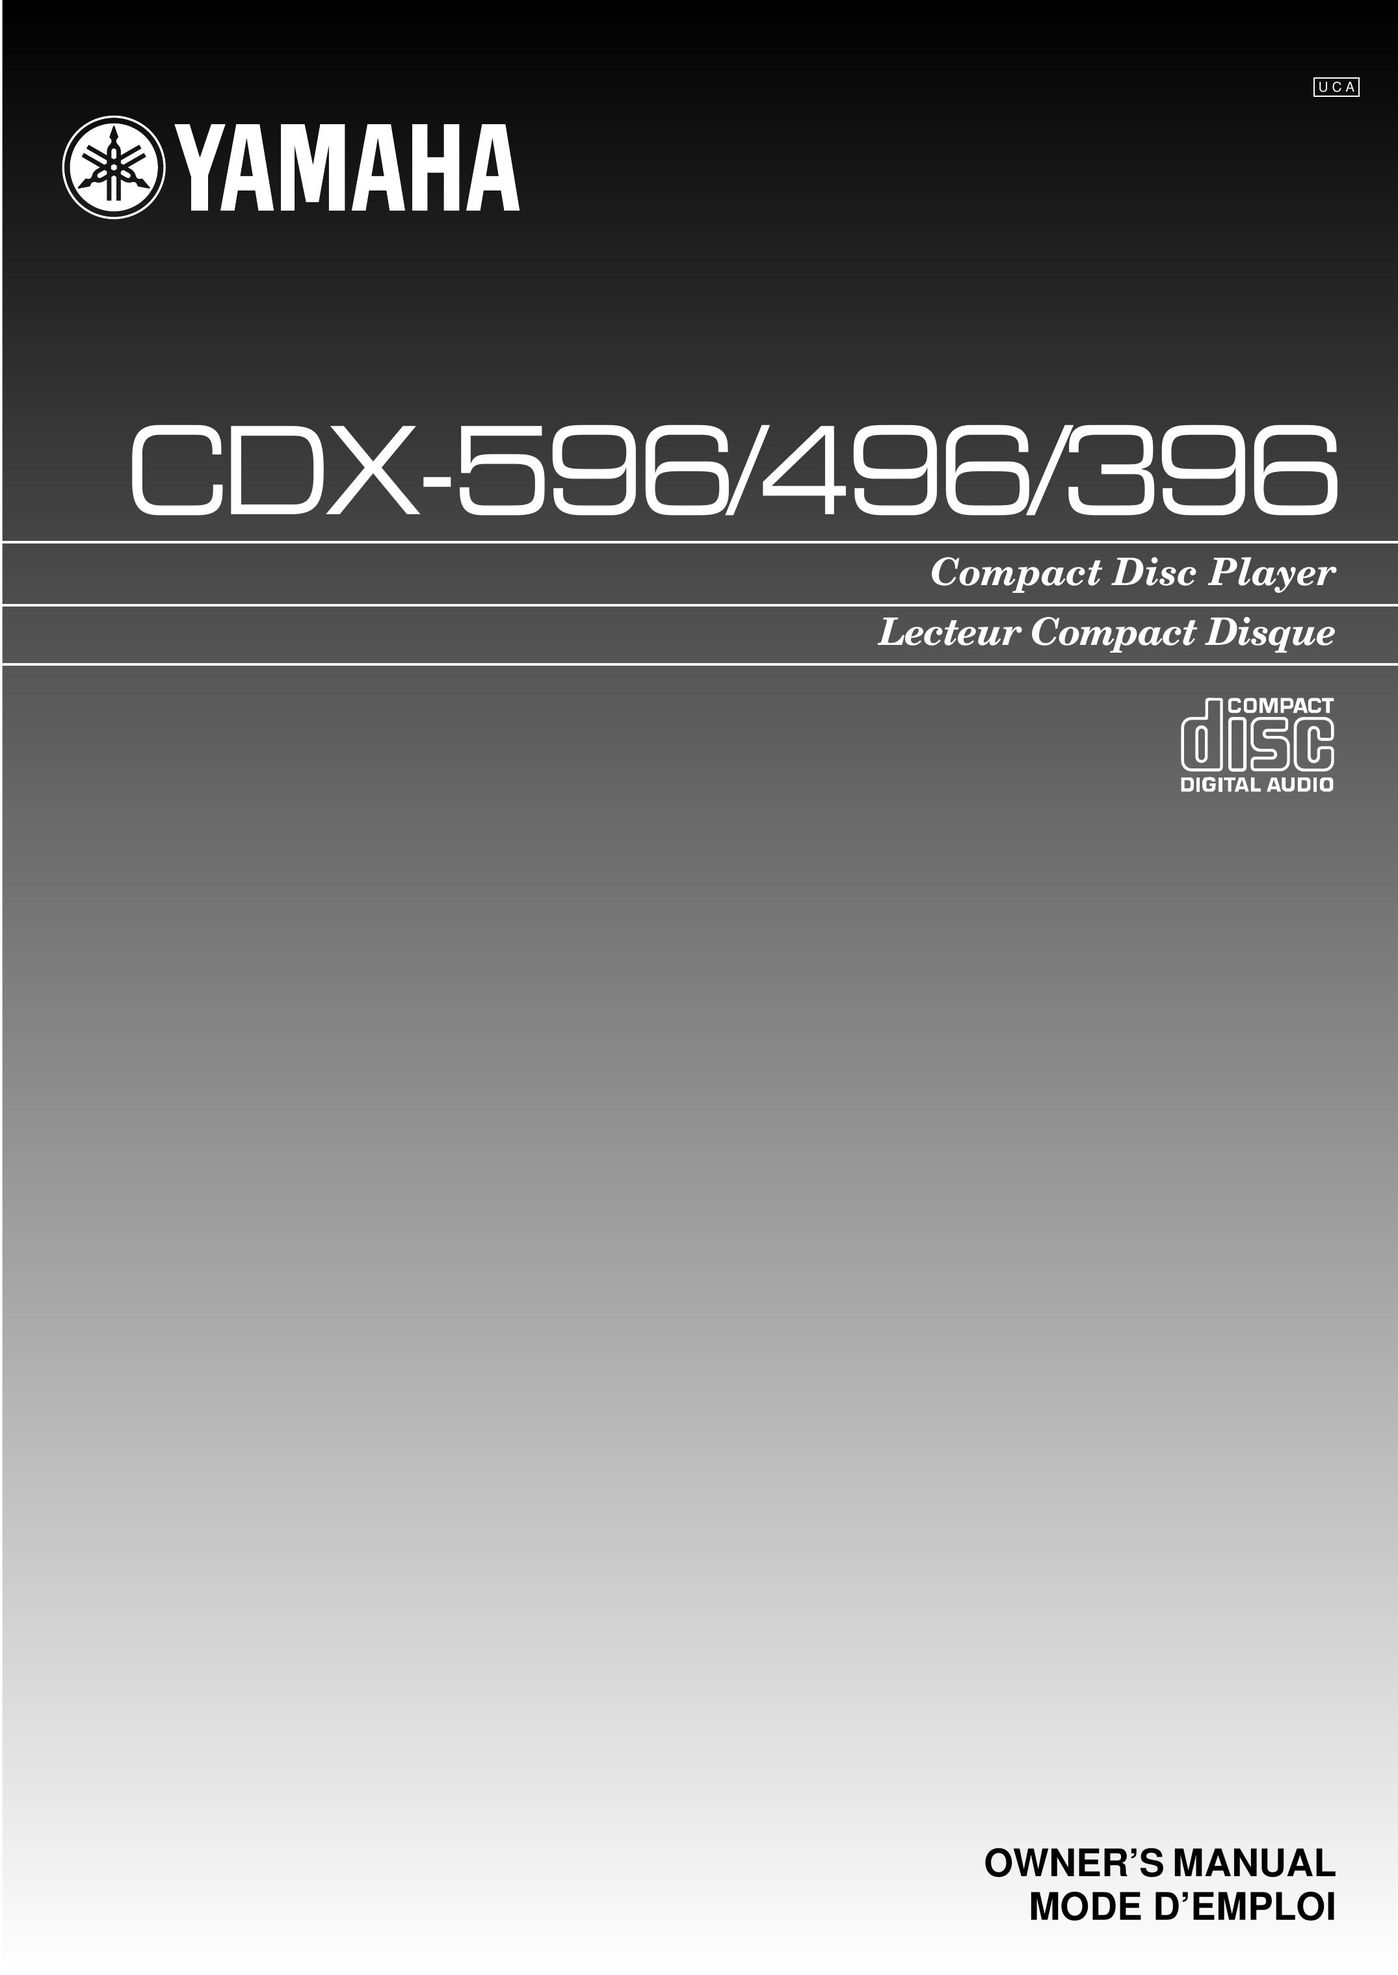 Yamaha CDX-596 CD Player User Manual